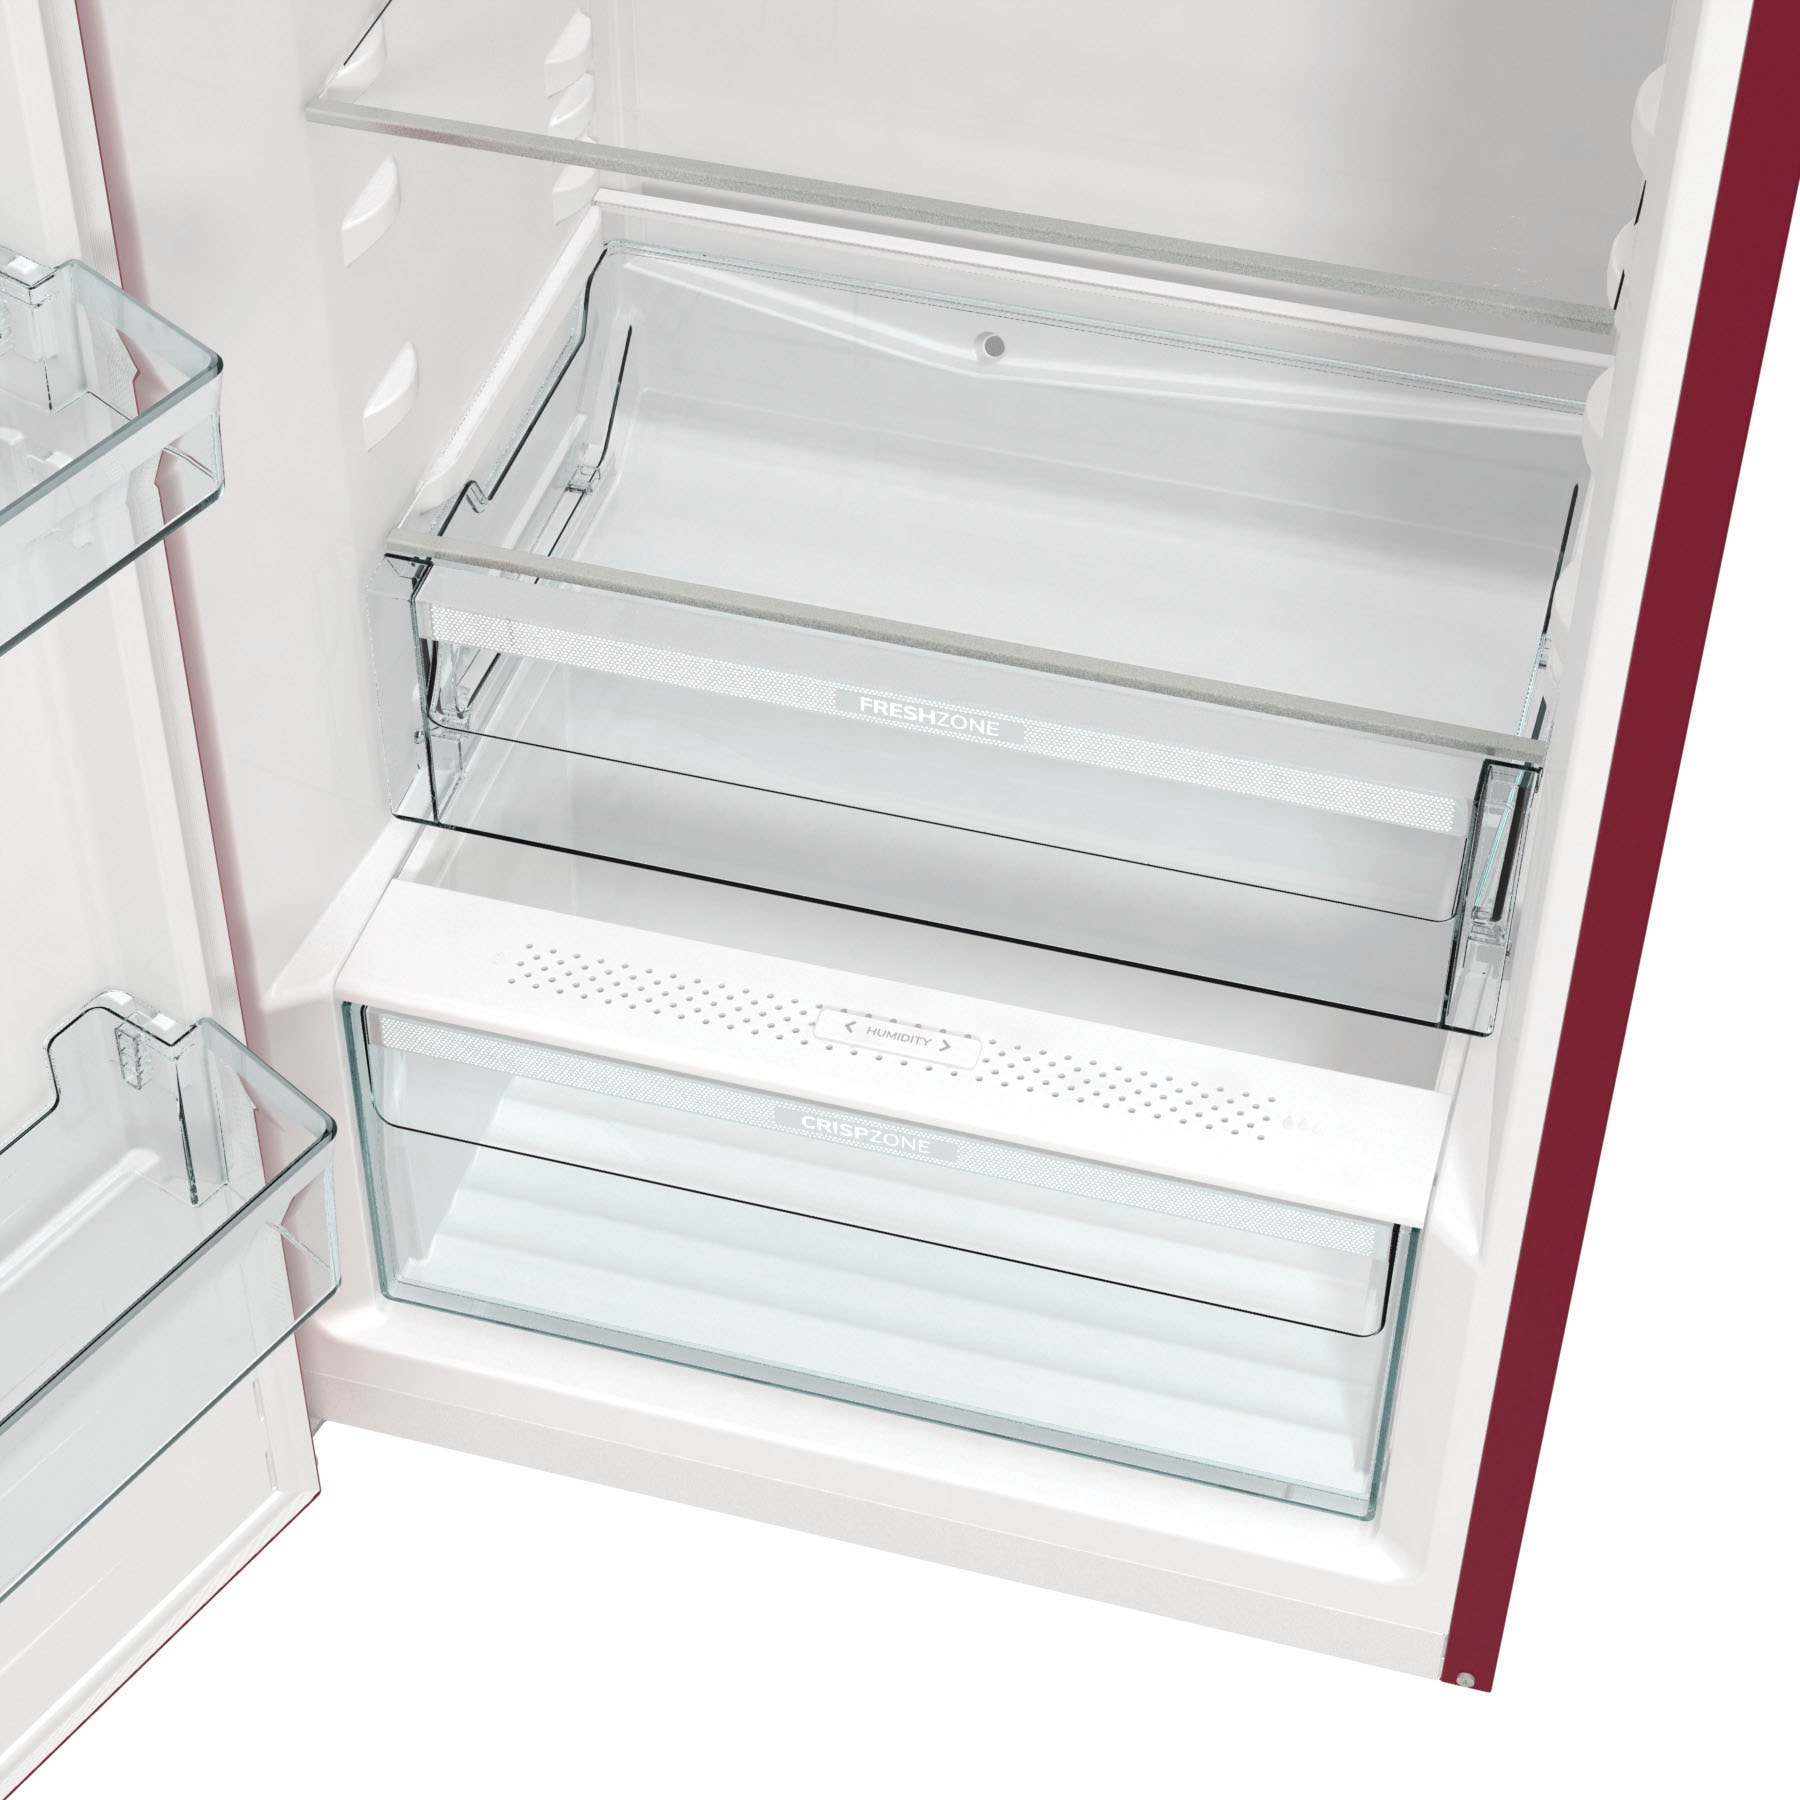 GORENJE Kühlschrank, ORB615DR-L, 152,5 cm hoch, 59,5 cm breit kaufen